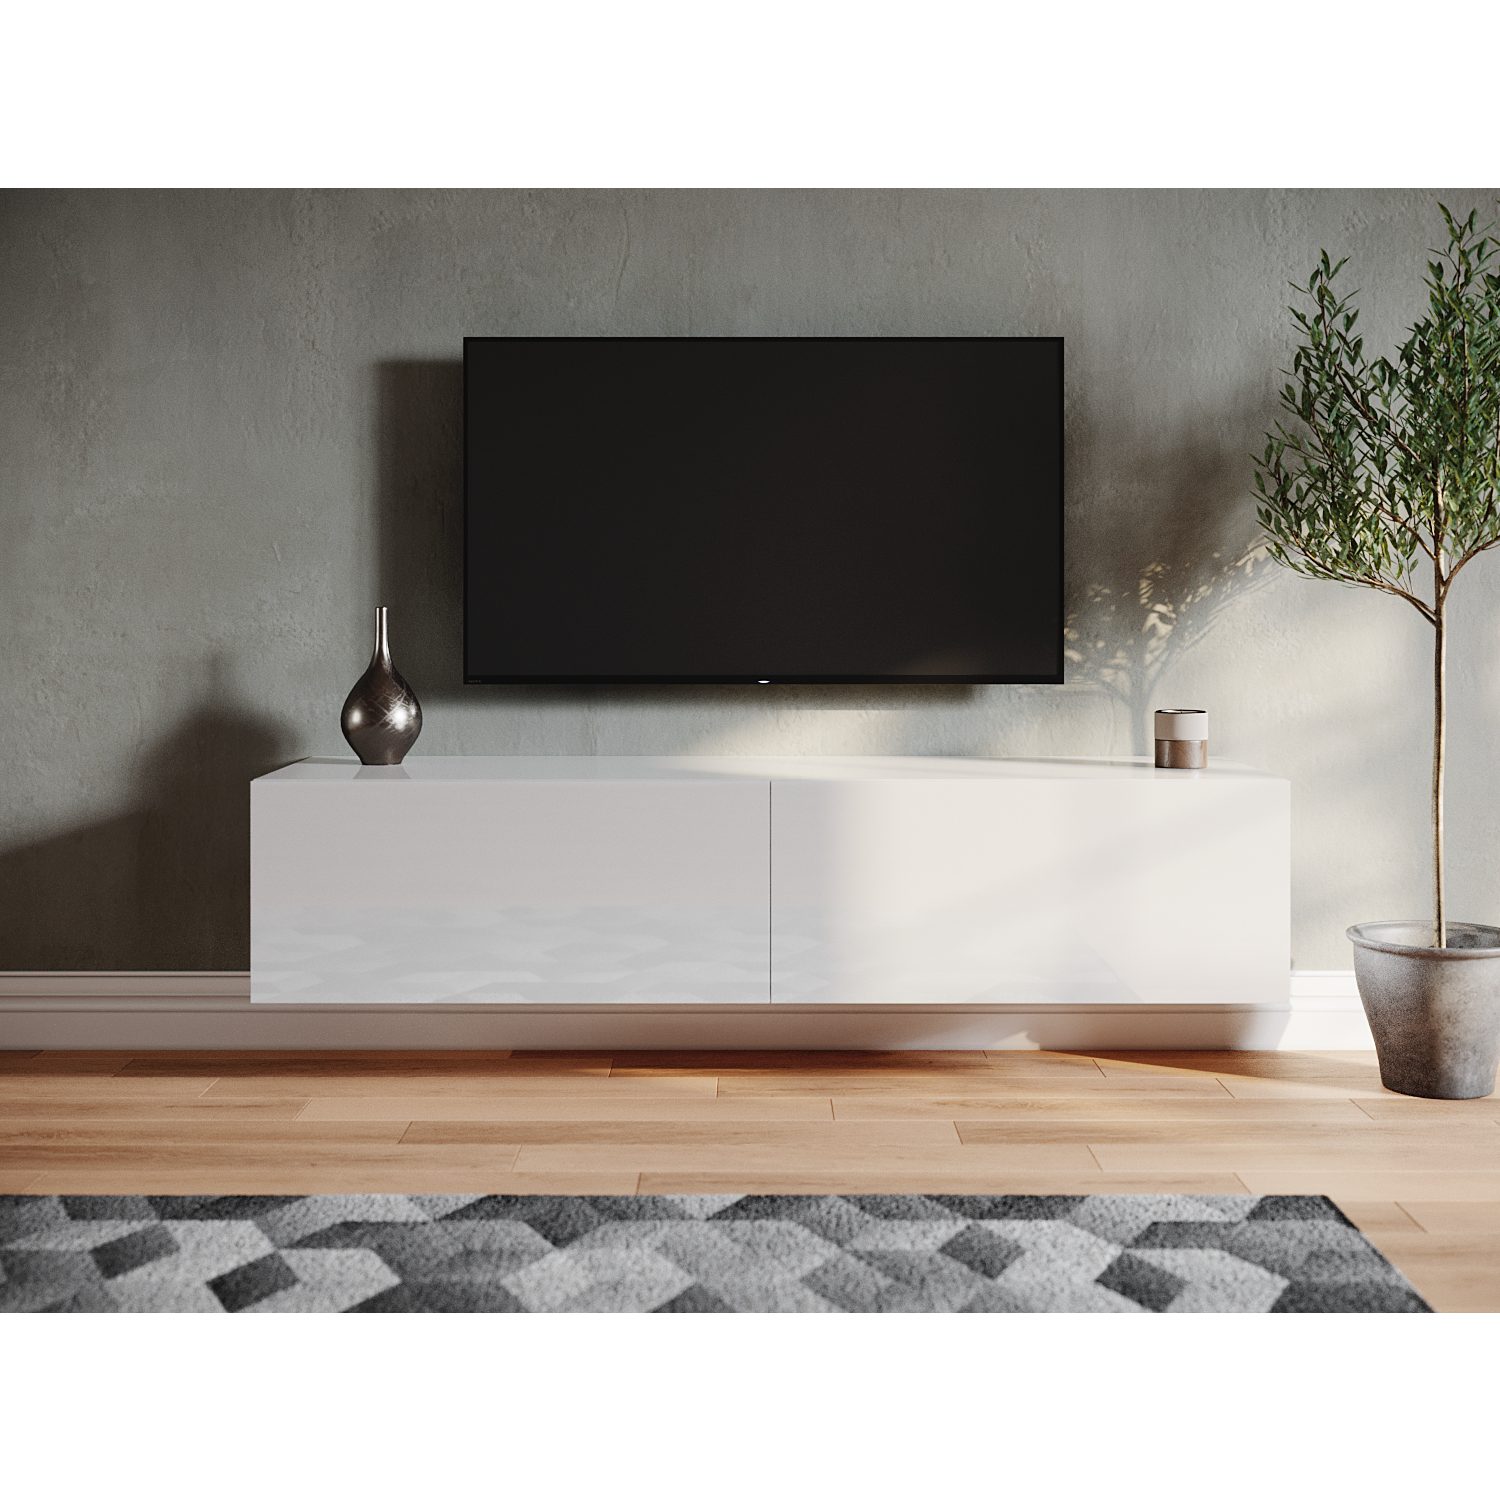 SONNI Lowboard »Breite 140cm, TV Board, Hängend, Hochglanz, Grau, Weiß,  140x40x30cm« online kaufen | OTTO